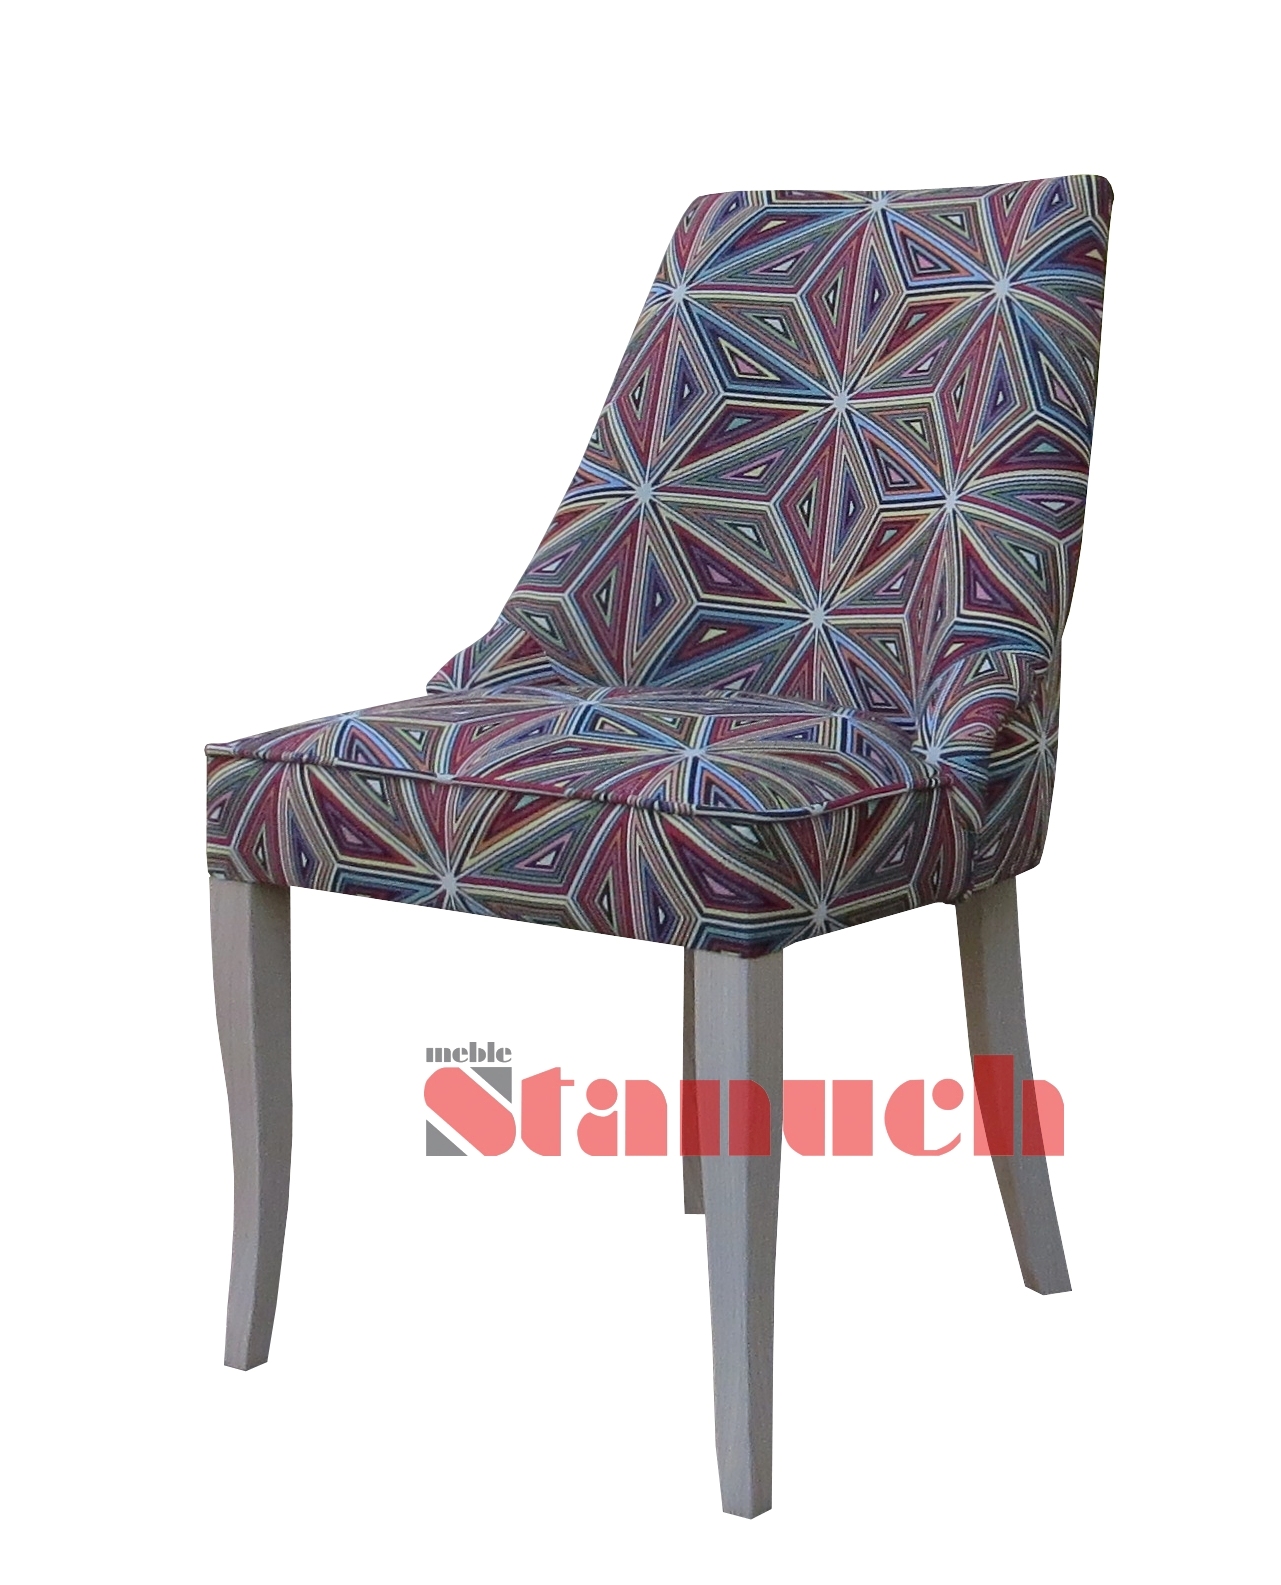 Wysokie krzesełka barowe oraz komfortowe modele wyposażone w podłokietniki